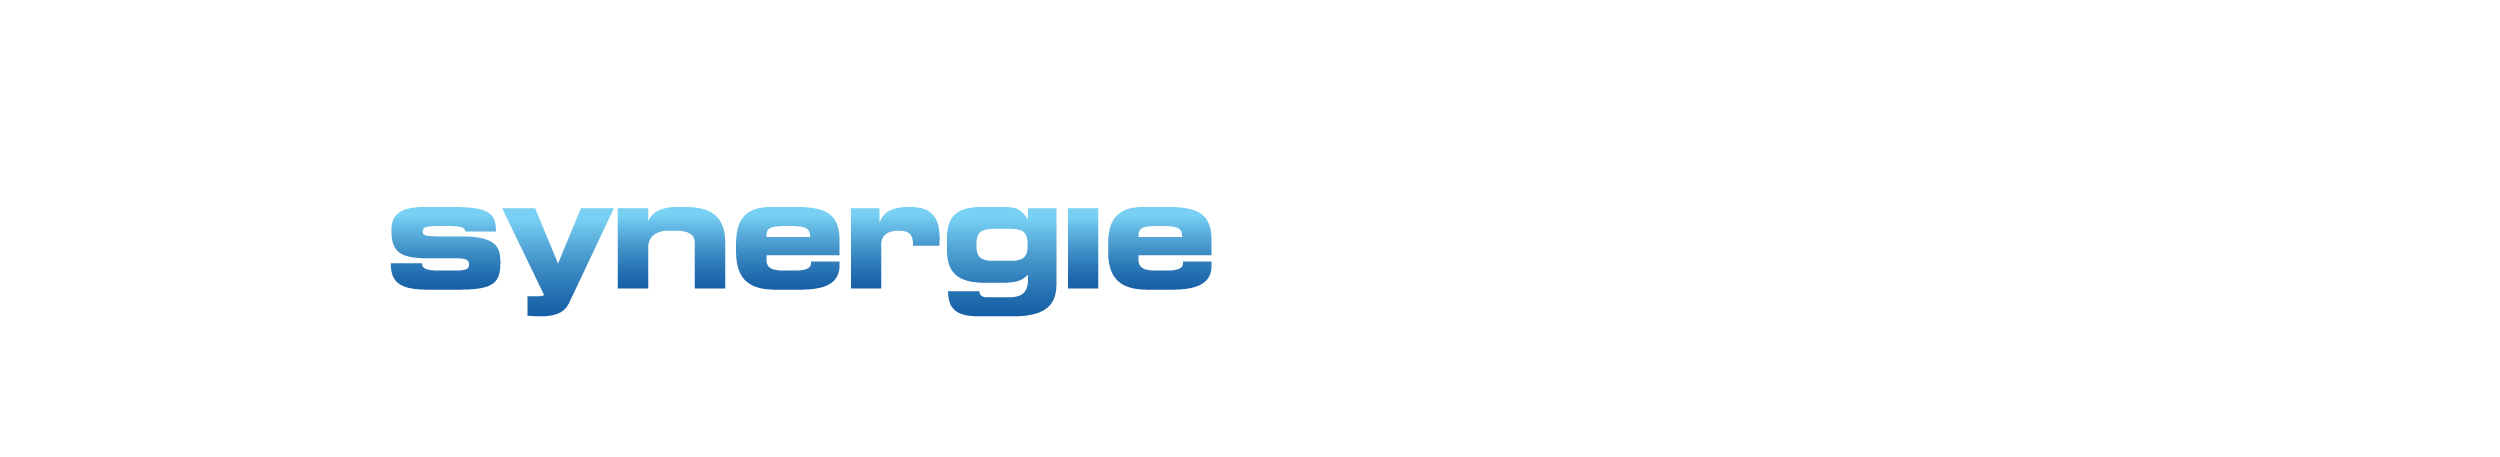 Synergie, LLC Logo